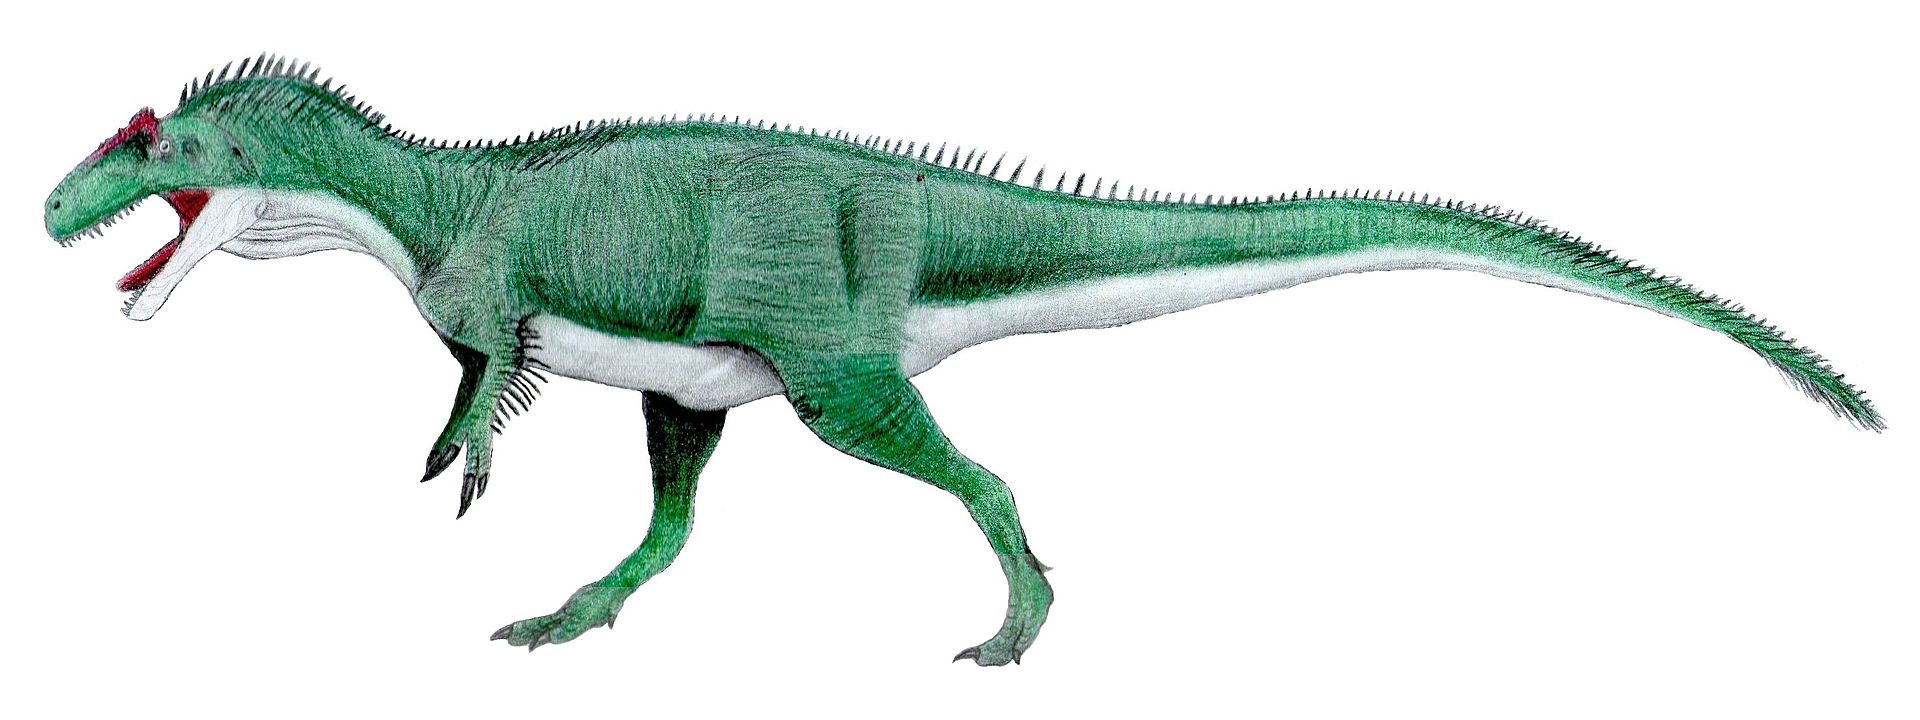 Obrazová rekonstrukce pravděpodobného vzezření kontroverzního druhu Epanterias amplexus. Tento obří teropod představoval patrně dominantního predátora, soupeřícího o kořist s dalšími obřími dravými dinosaury z ekosystémů souvrství Morrison, jako byl 